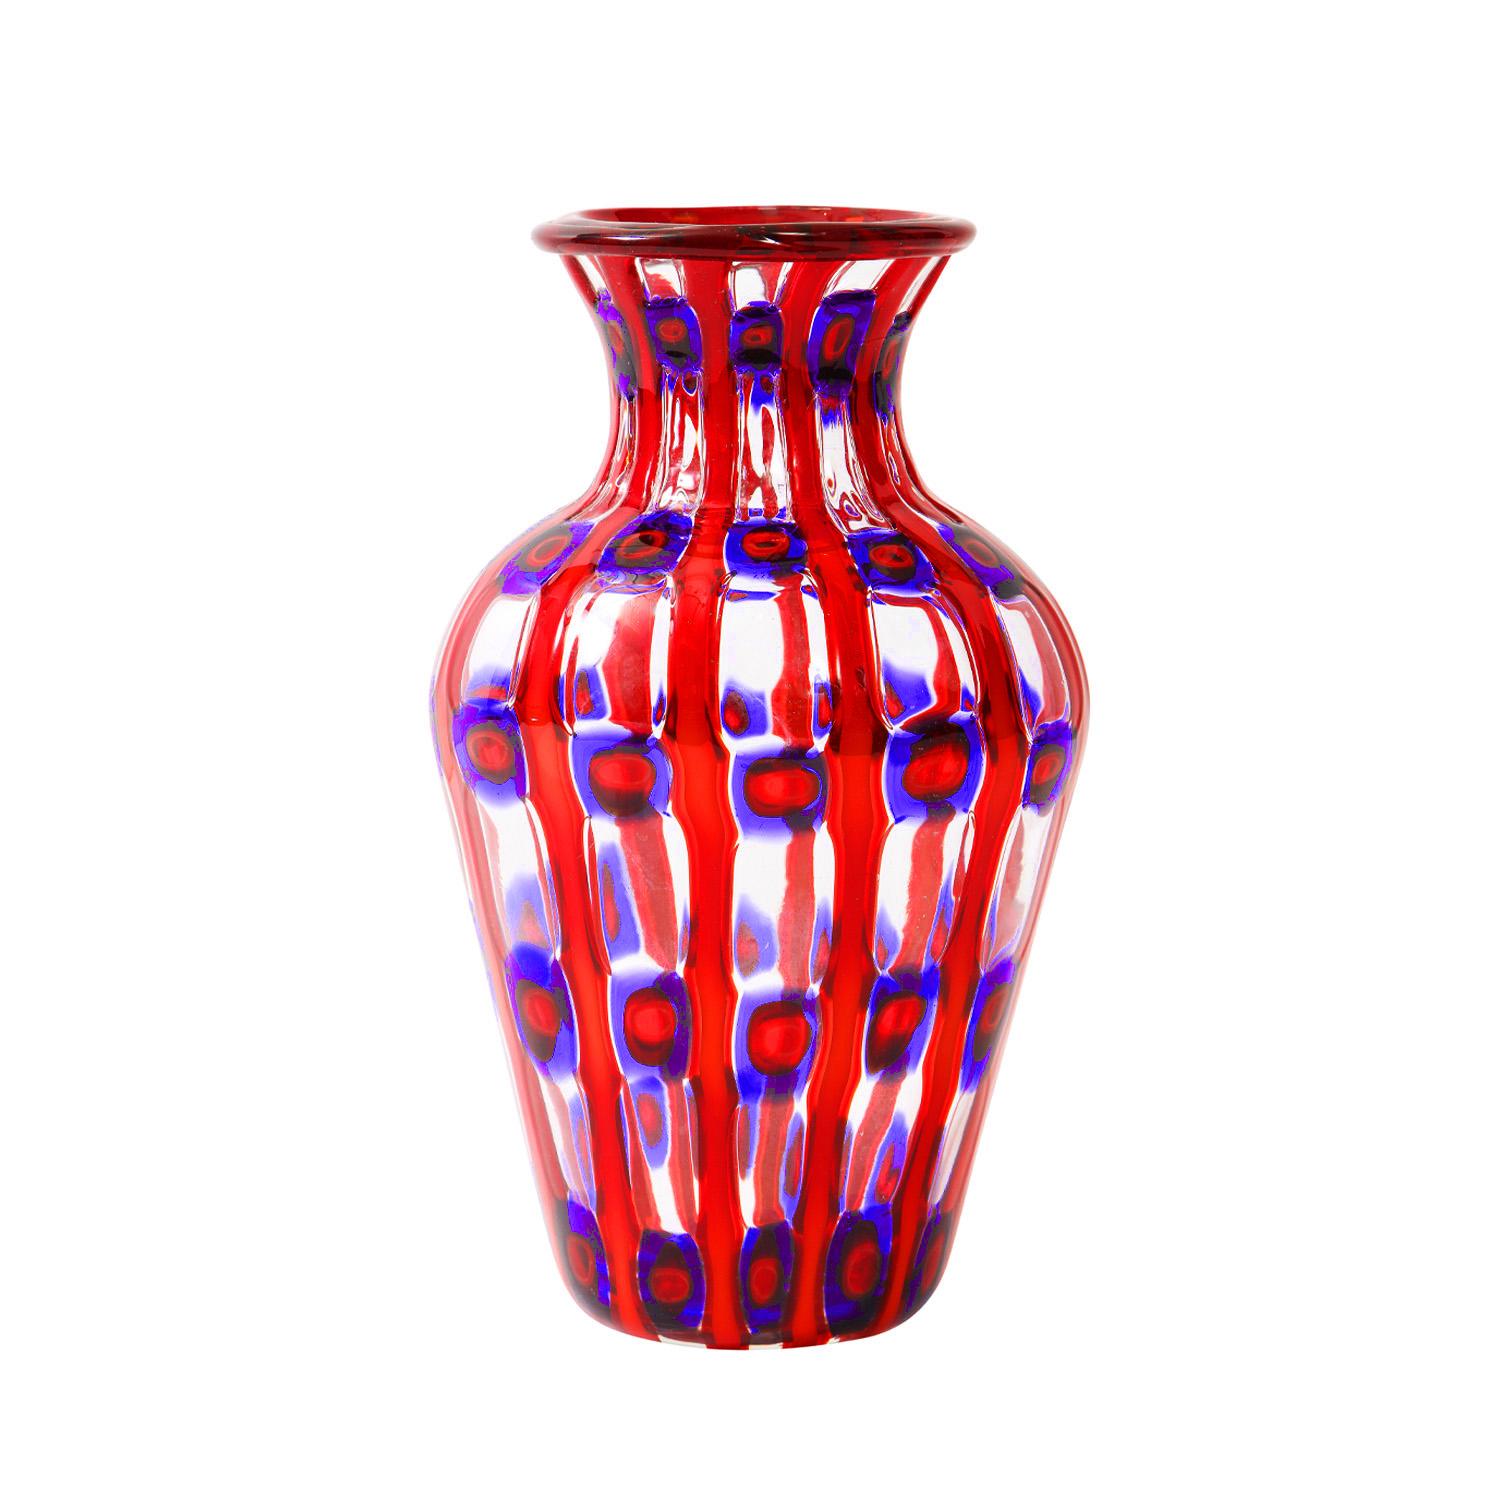 Vase « Transennati » (Barriers) soufflé à la main, modèle 15116, avec tiges et murrhines multicolores, conçu par Anzolo Fuga pour Arte Vetraria Muranese (A.V.E.M.), Murano Italie, vers 1962. Une pièce vraiment étonnante.

Référence :

Anzolo